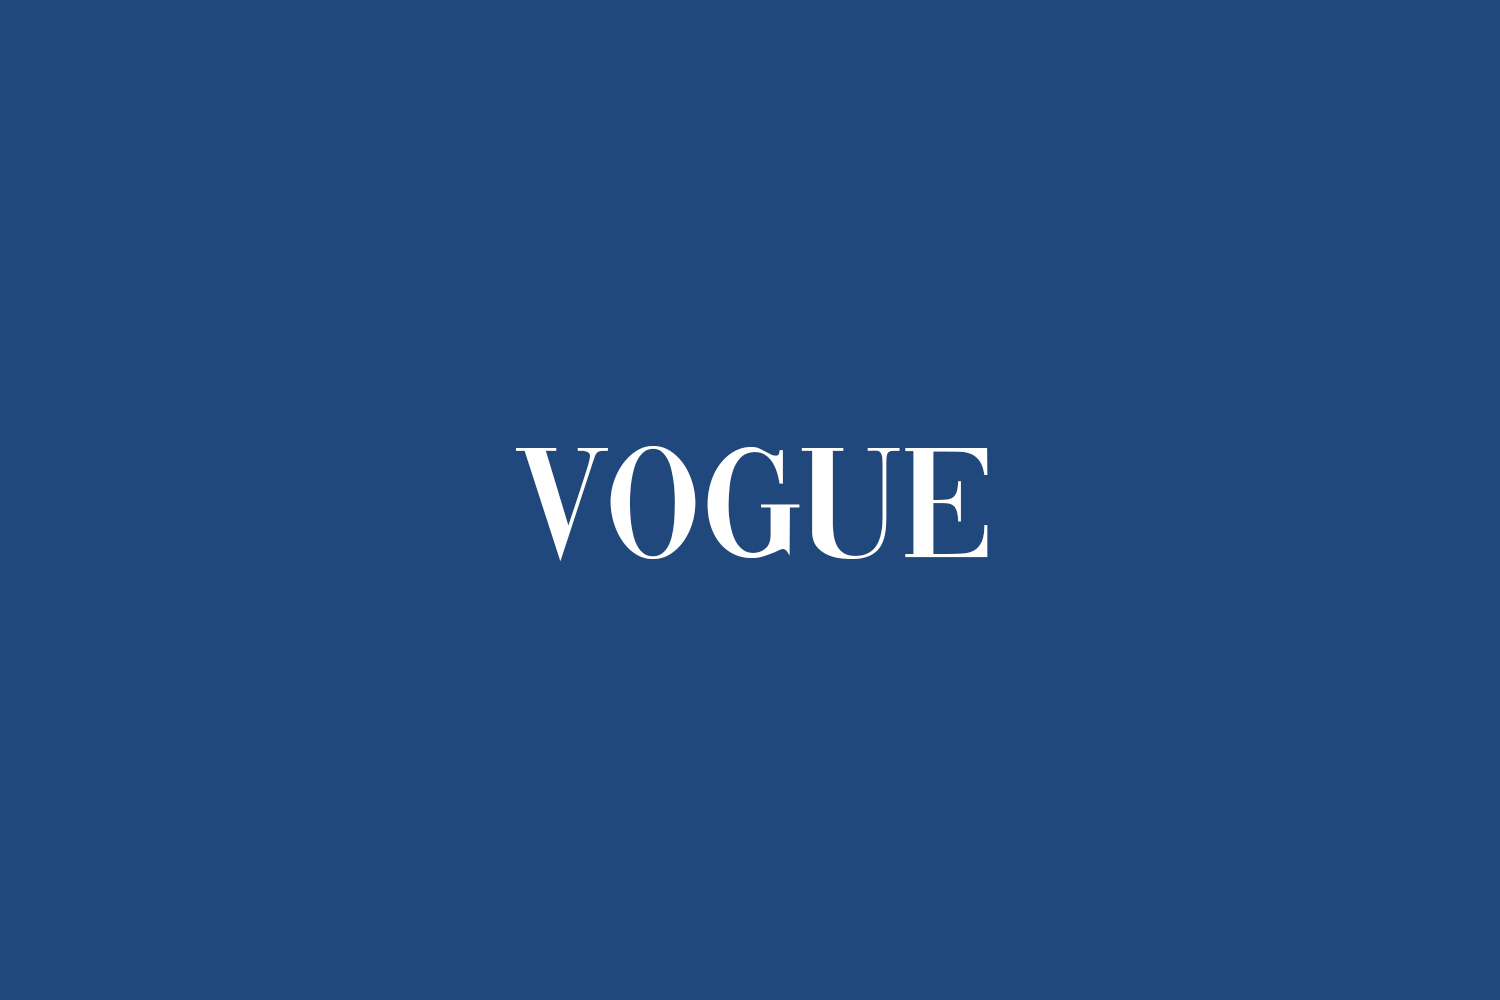 Vogue | Fonts Shmonts